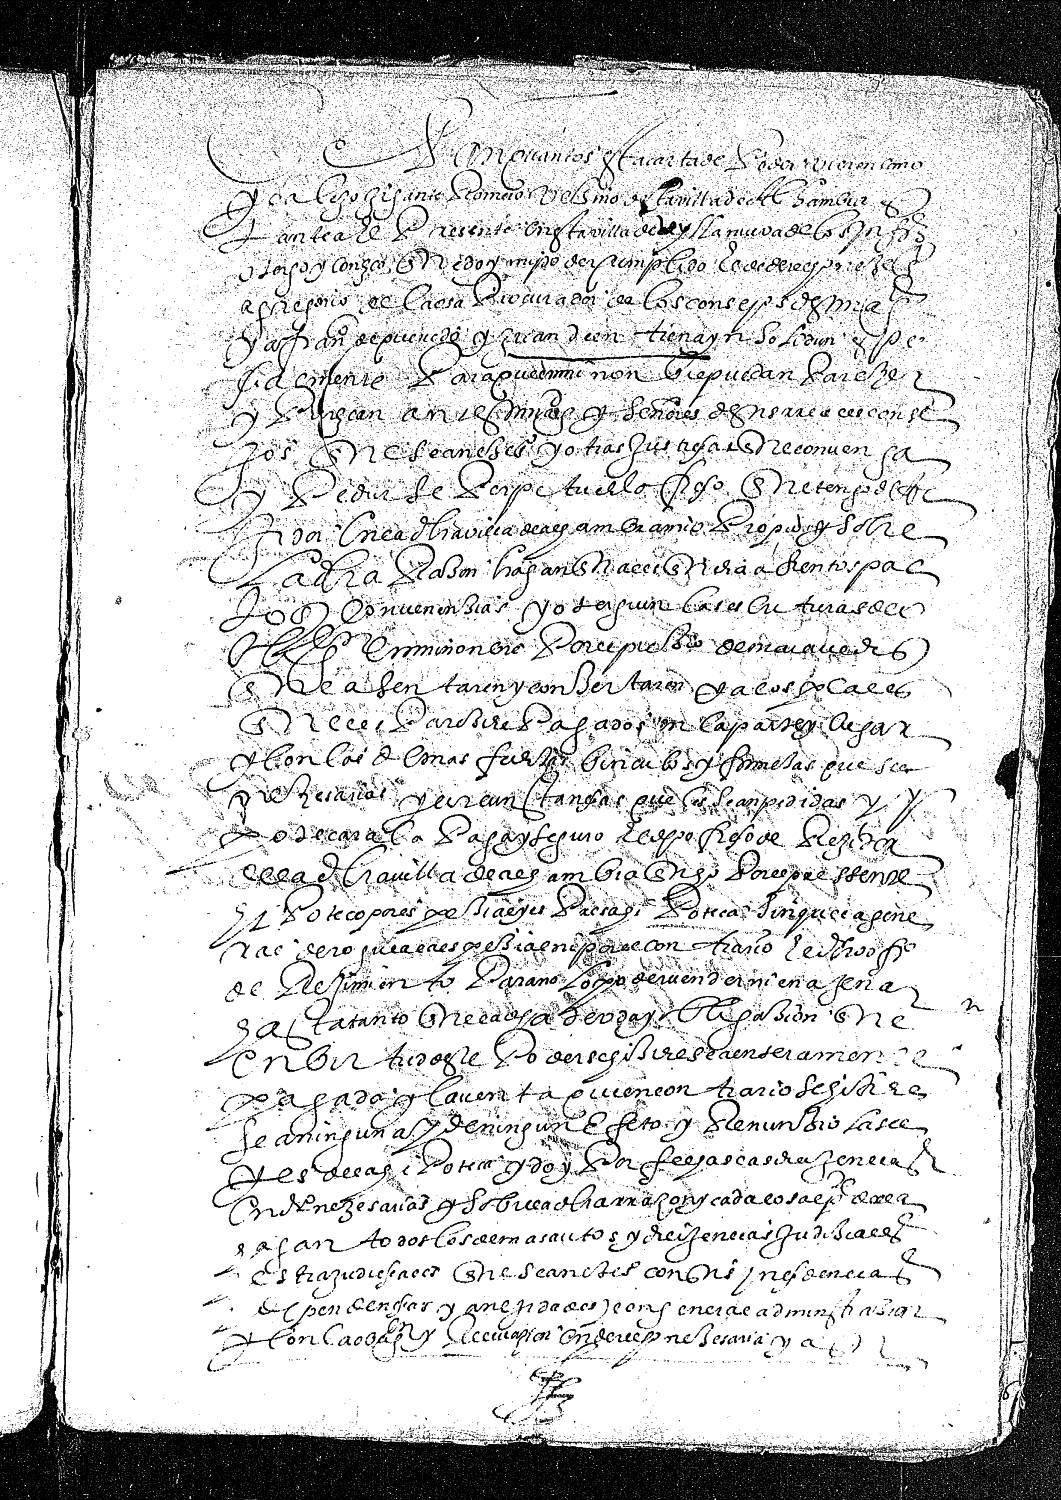 Carta de poder de Alejo Gigante dada a Gregorio de Caesa, procurador del Consejo Real, para que le consiga en la Corte la perpetuación del oficio de regidor de Alhambra que tiene.